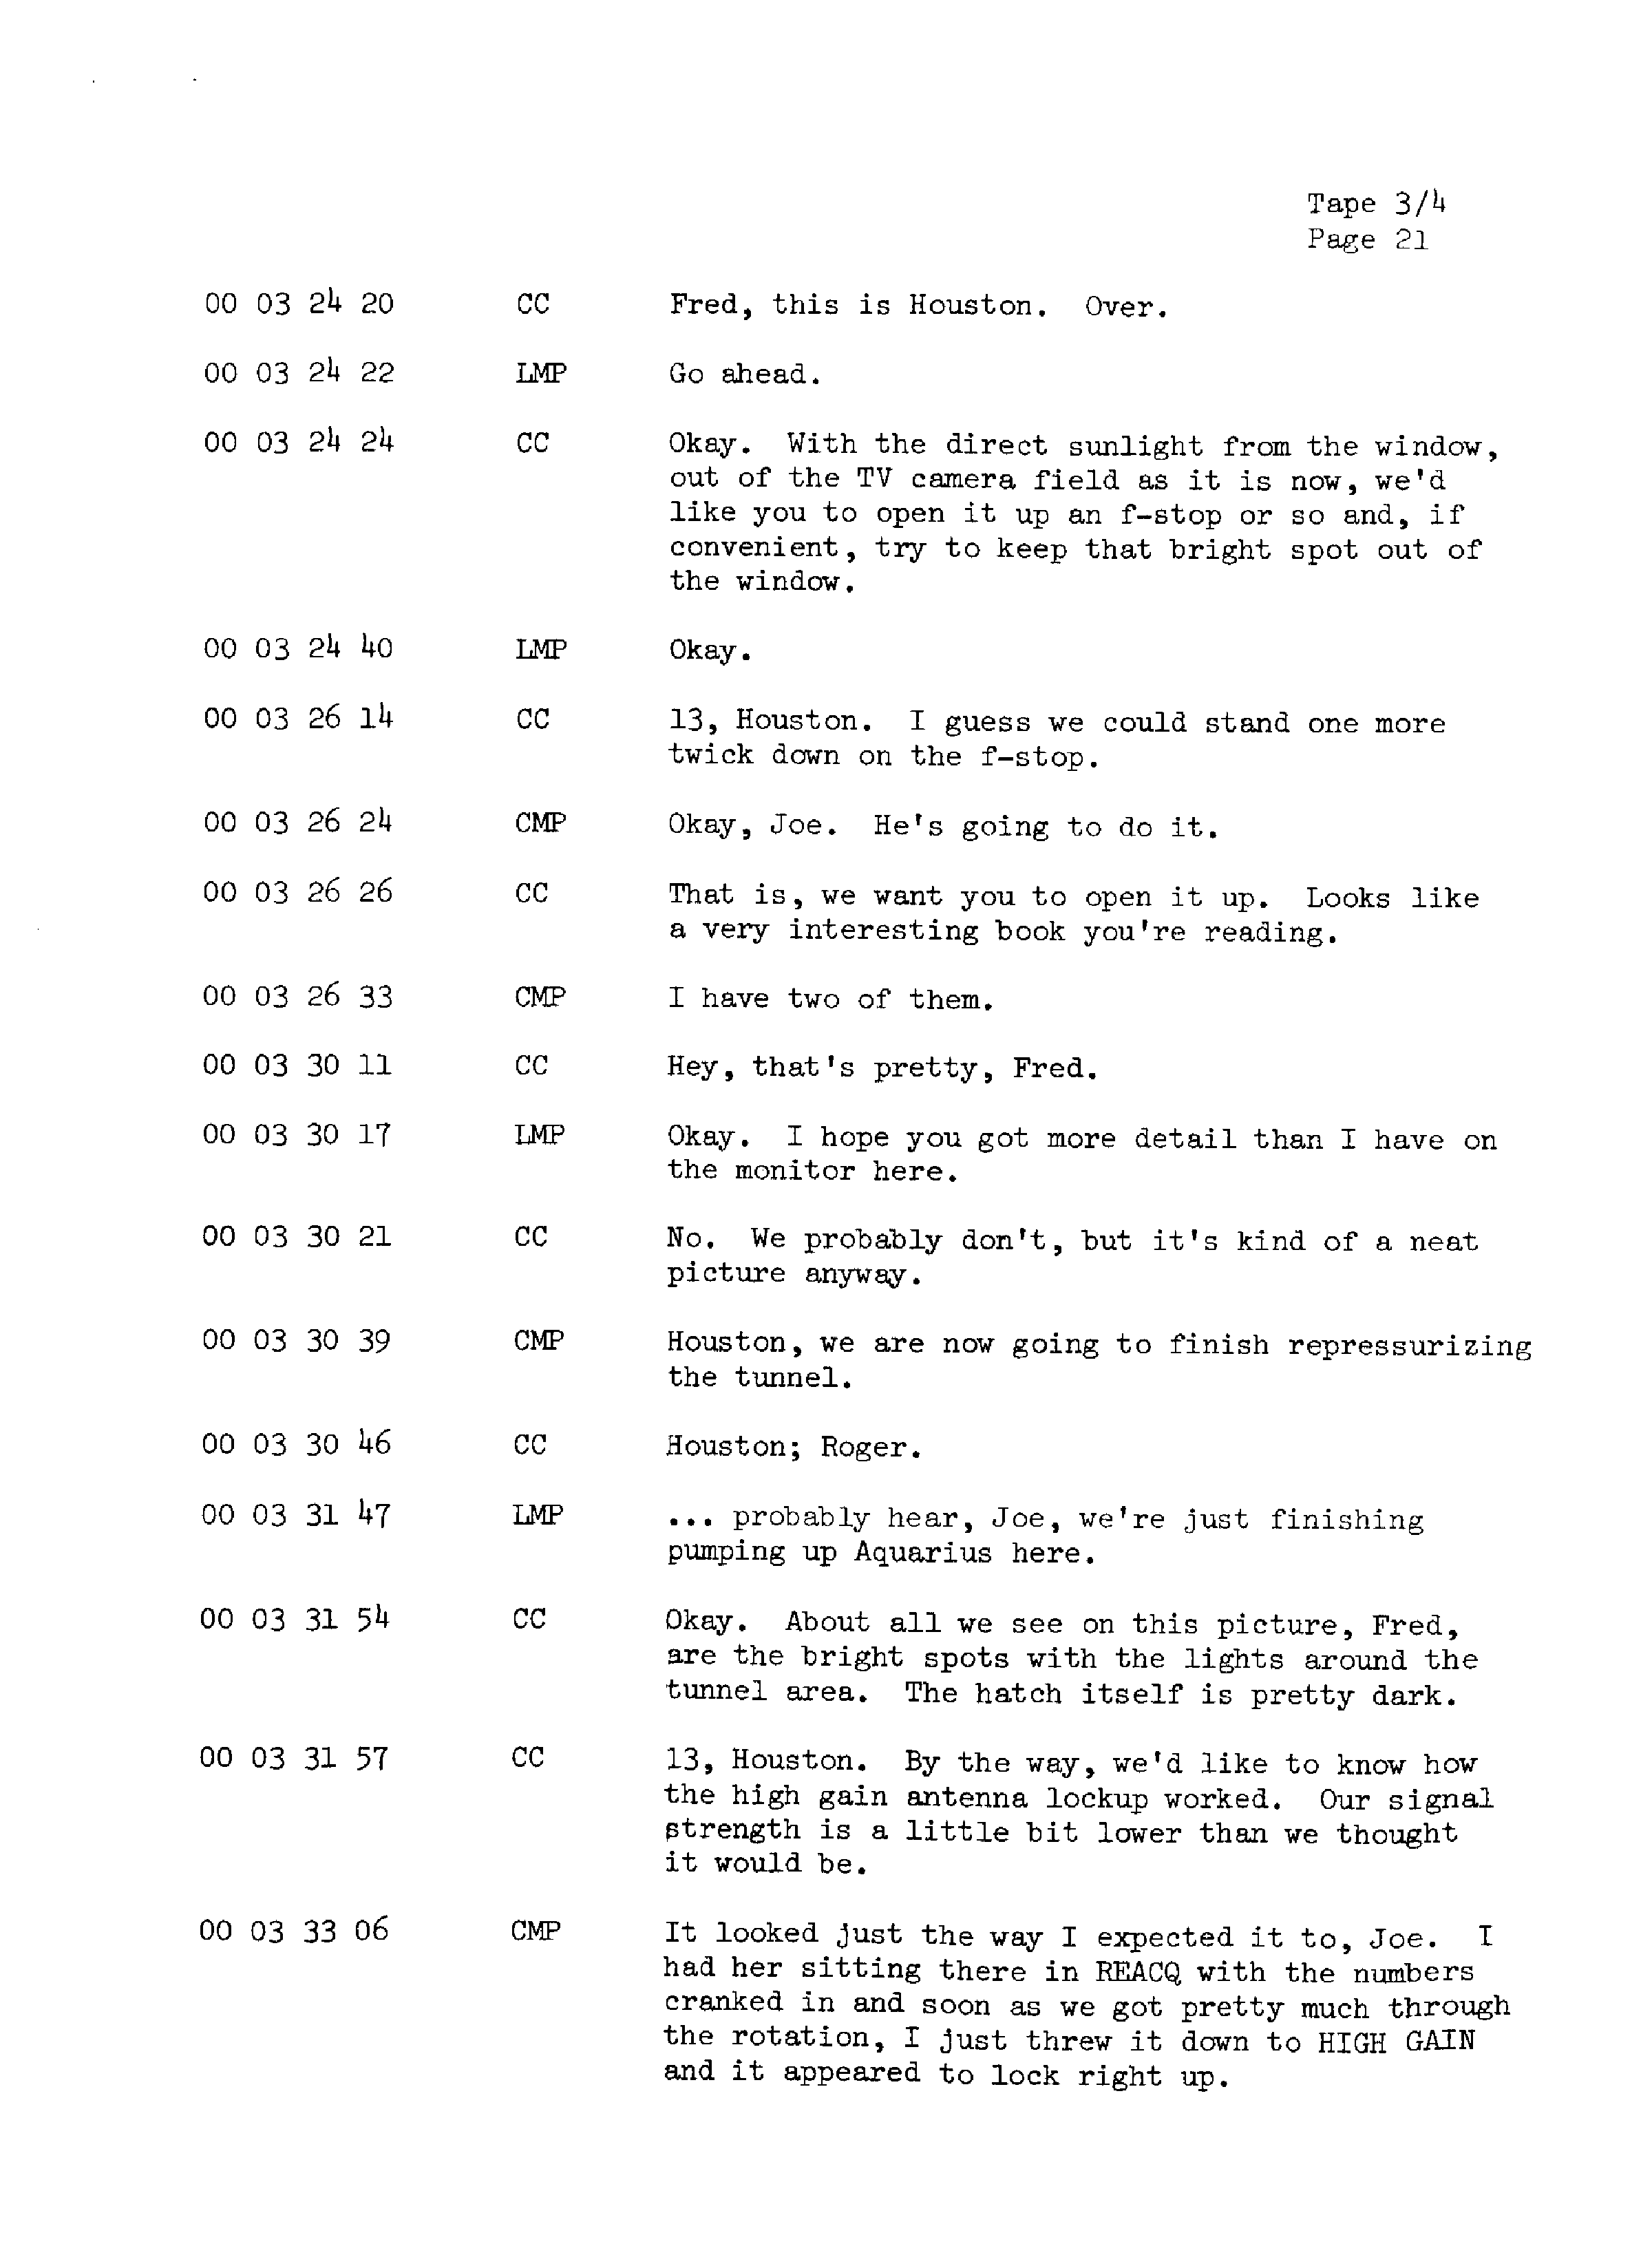 Page 28 of Apollo 13’s original transcript